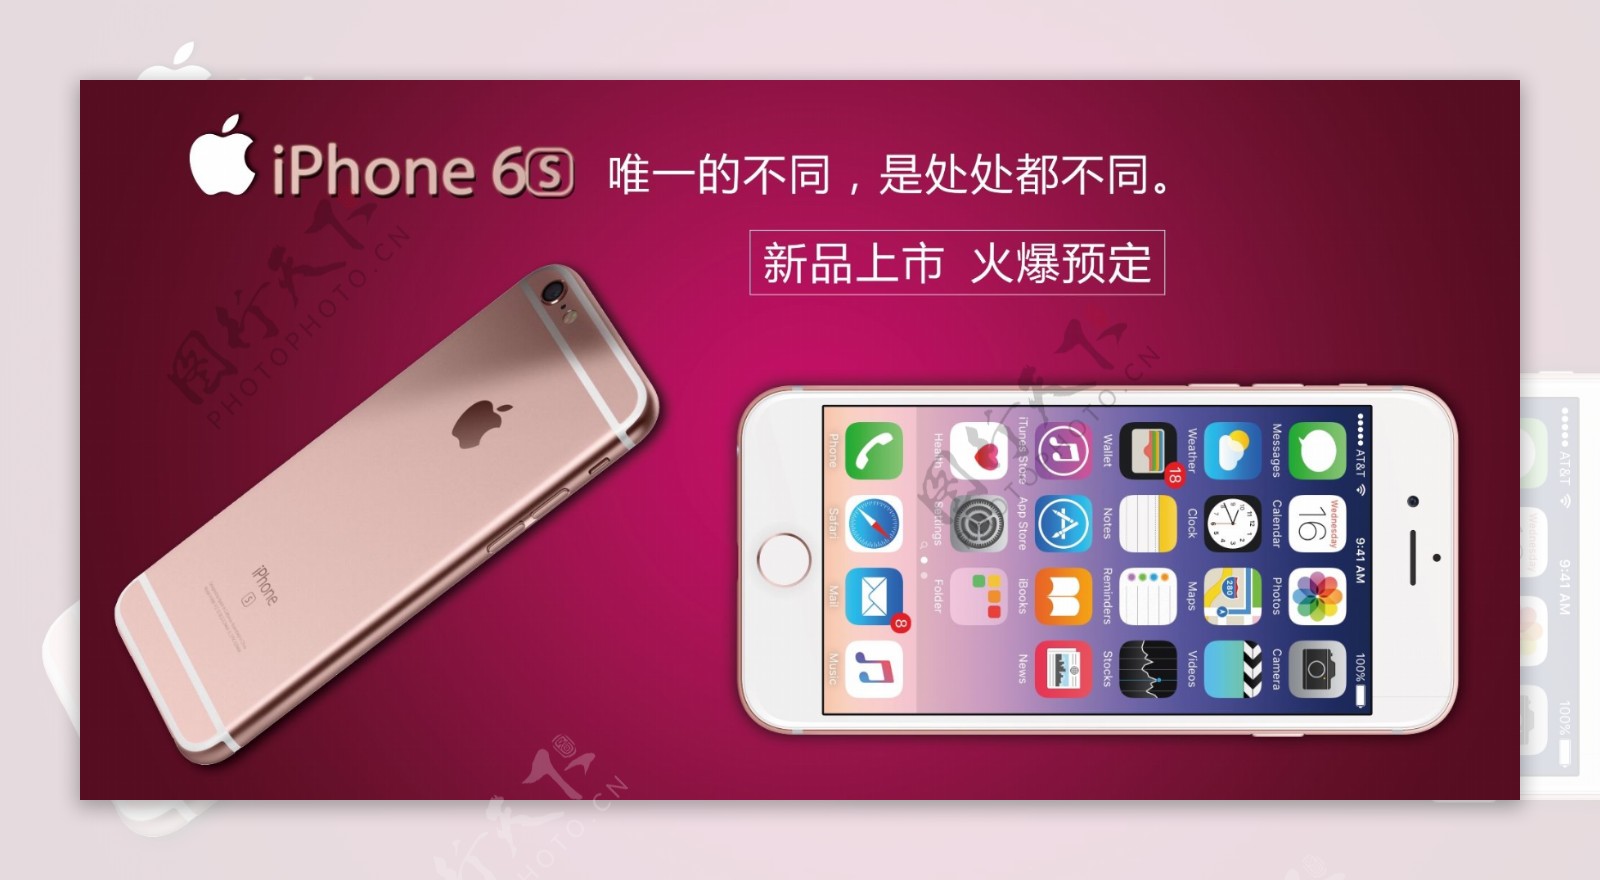 iphone6s玫瑰金图片